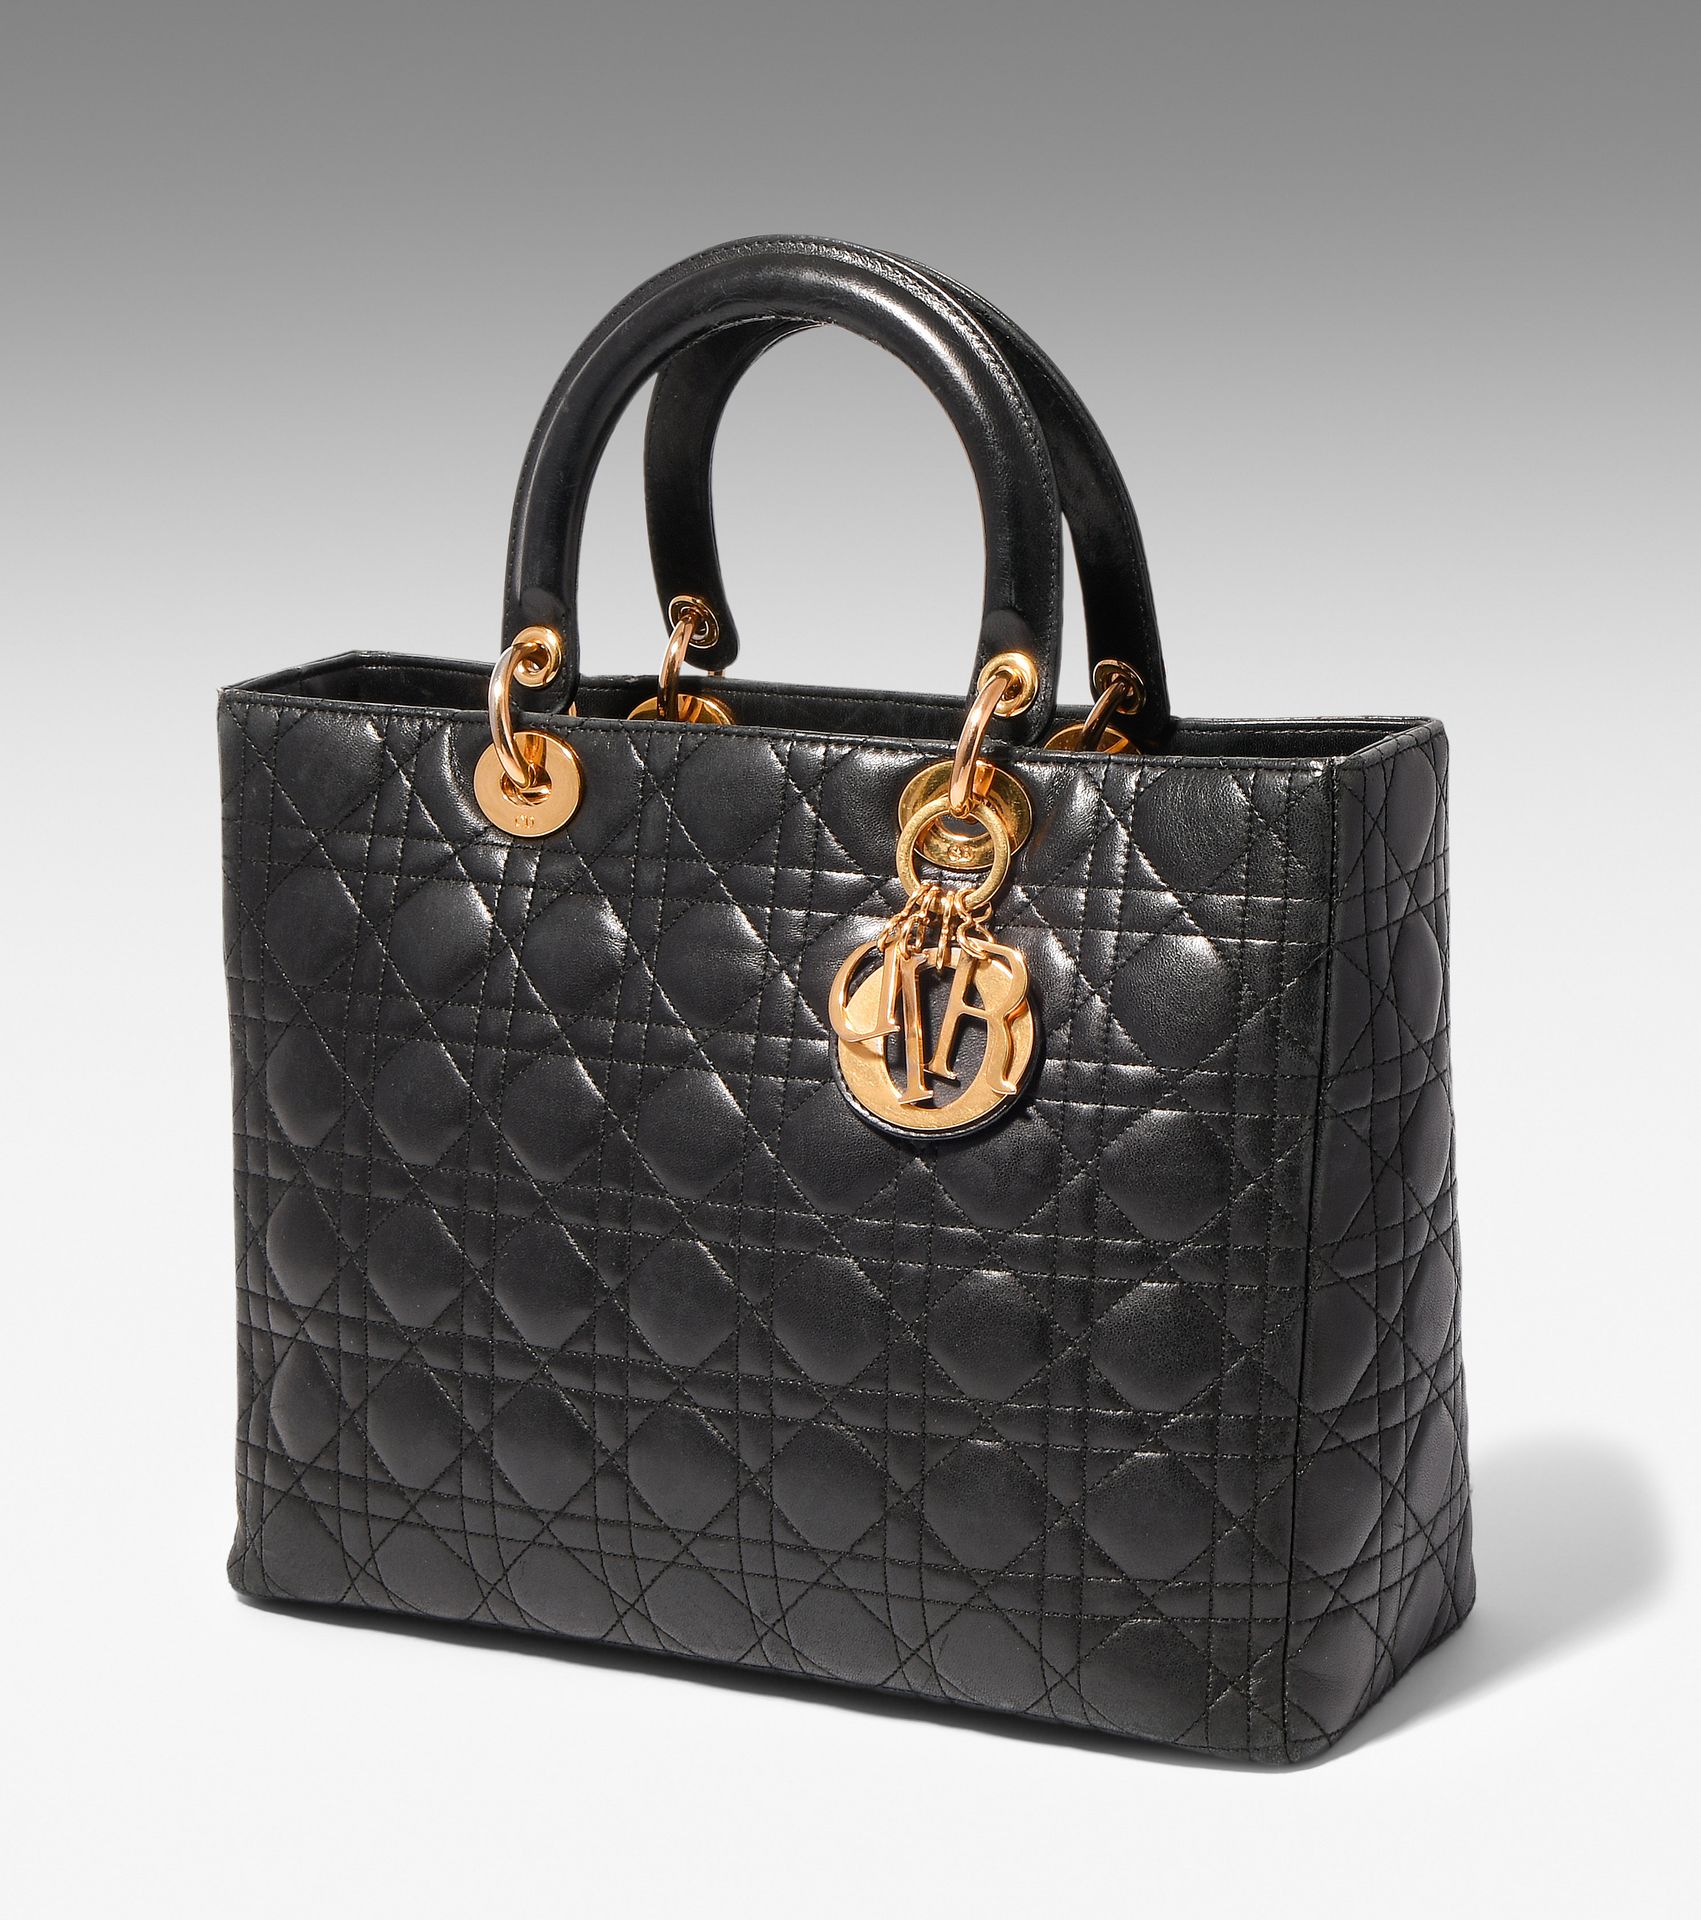 Dior, Handtasche "Lady Dior" Dior, sac à main "Lady Dior".
En cuir noir matelass&hellip;